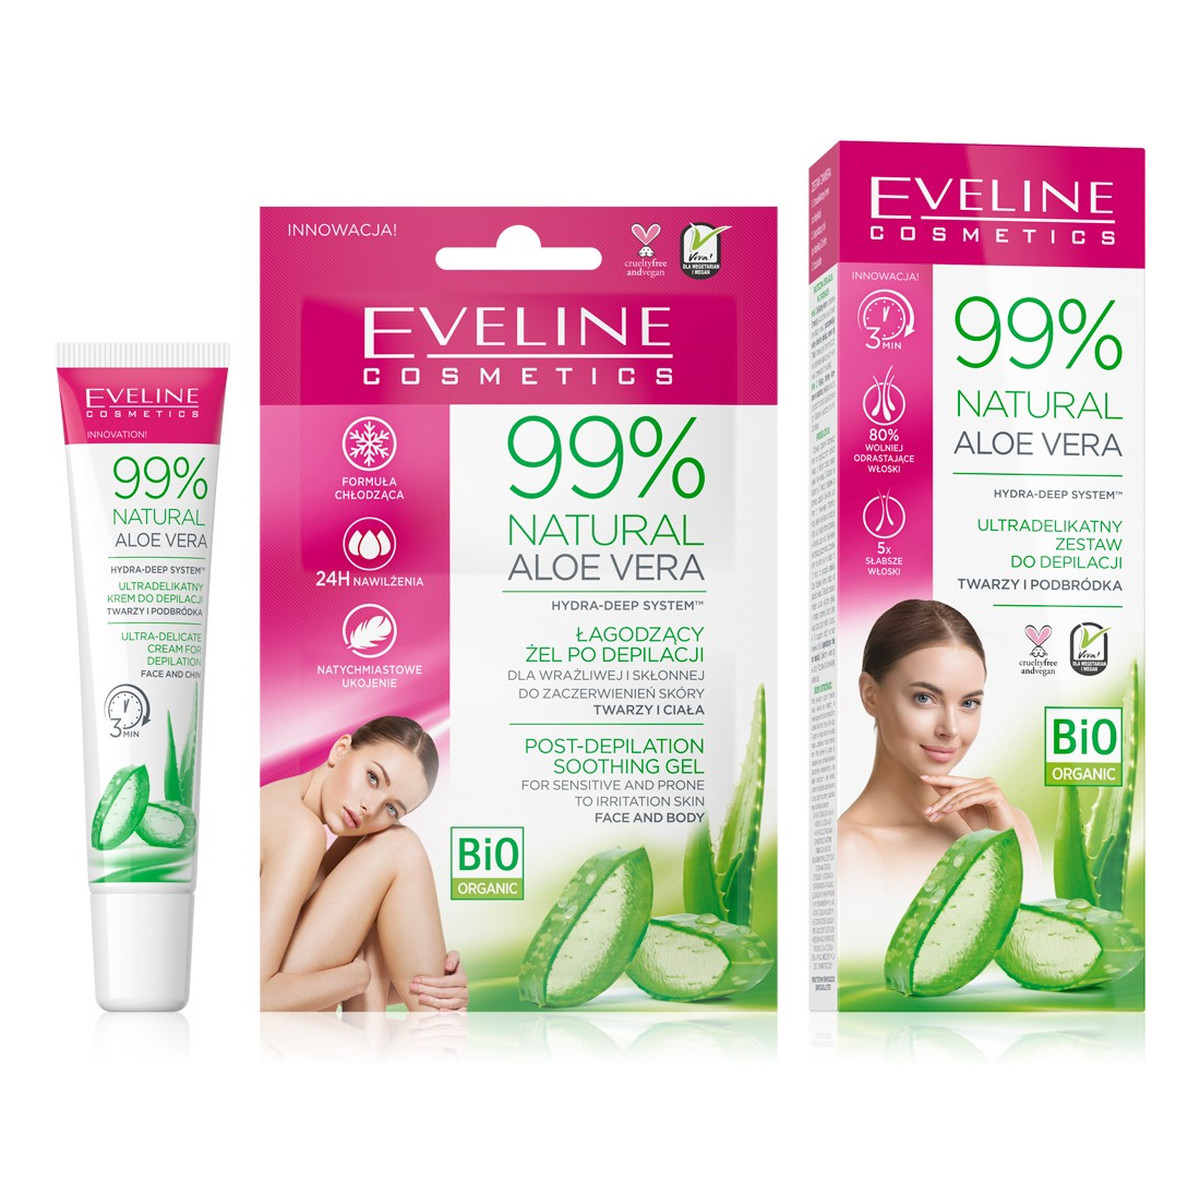 Eveline 99% Natural Aloe Vera Ultradelikatny Zestaw do depilacji twarzy i podbródka